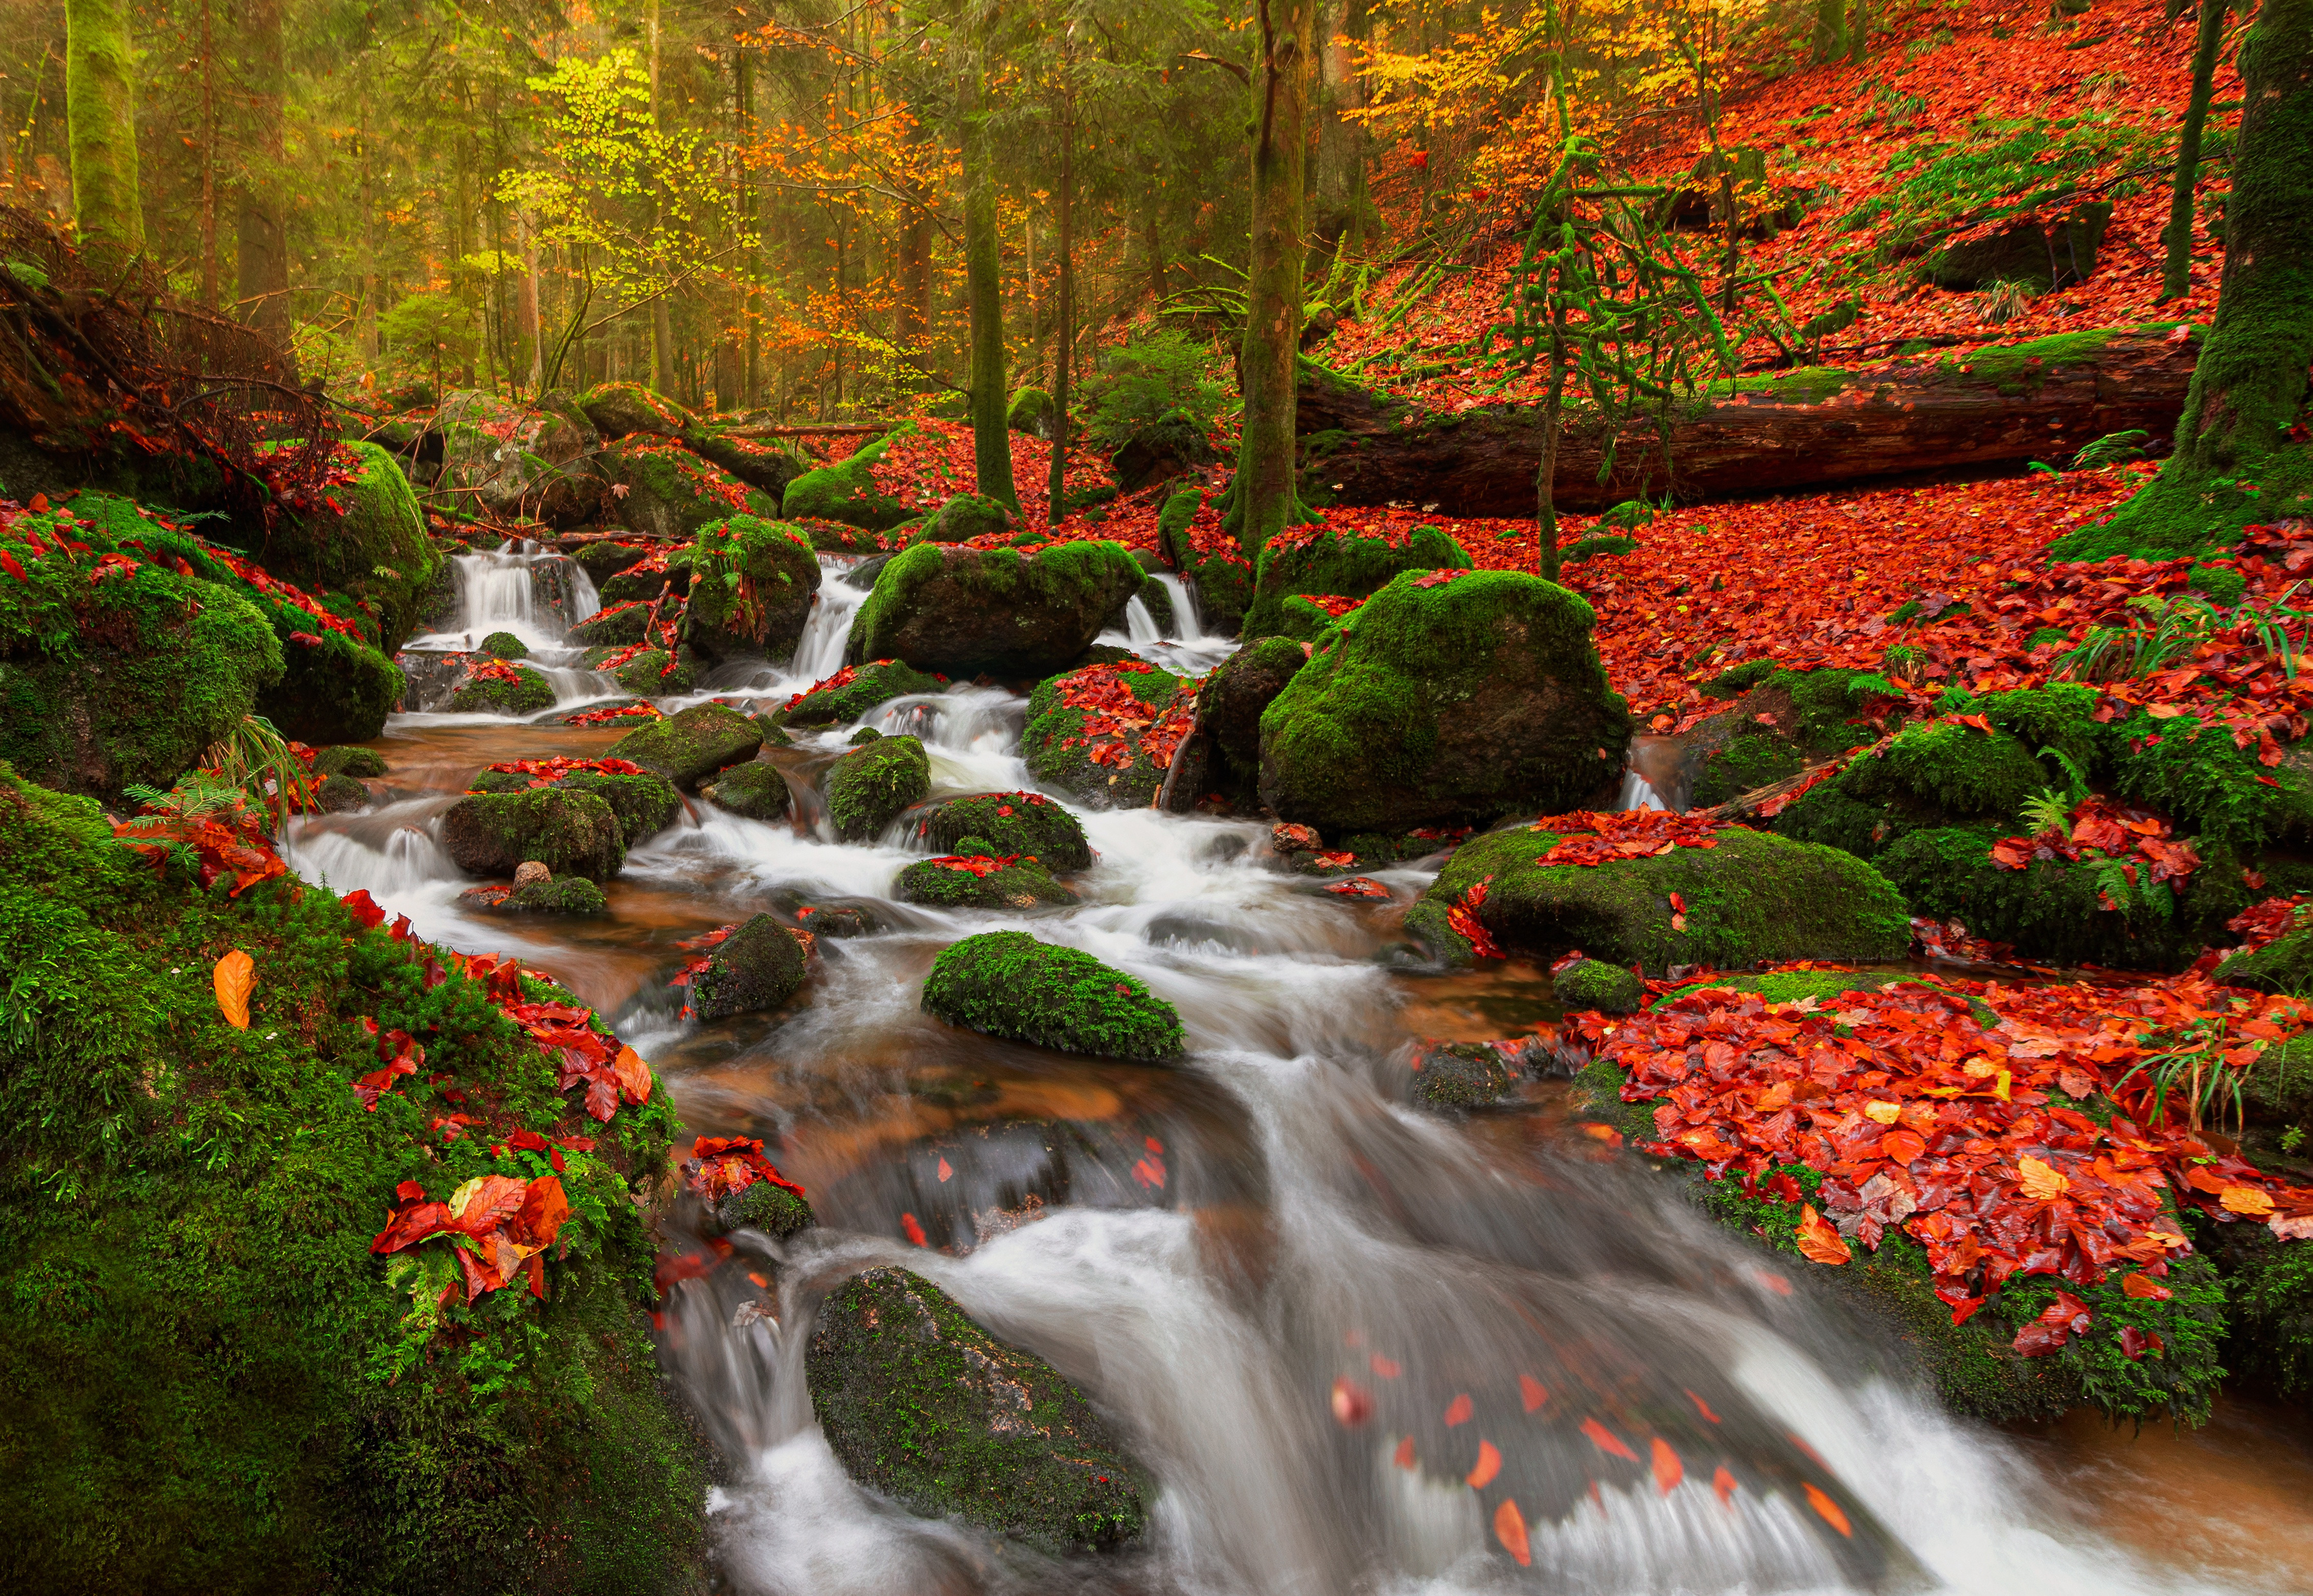 Фото обои осень, водопад, поток, падение, мох, скалы, Германия, пейзажи - бесплатные картинки на Fonwall